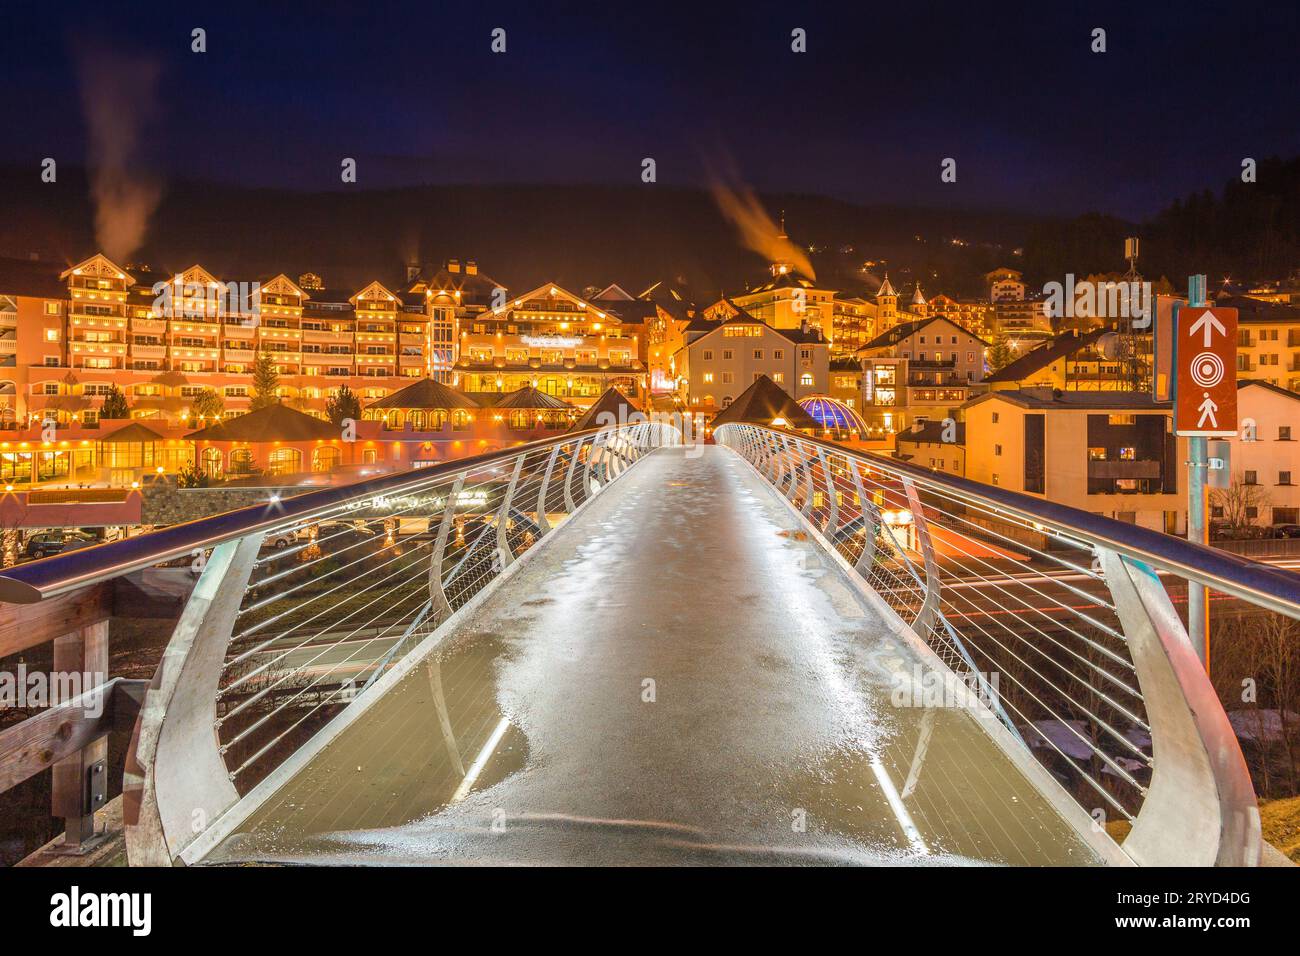 Vue de nuit du pont moderne au village de montagne Banque D'Images